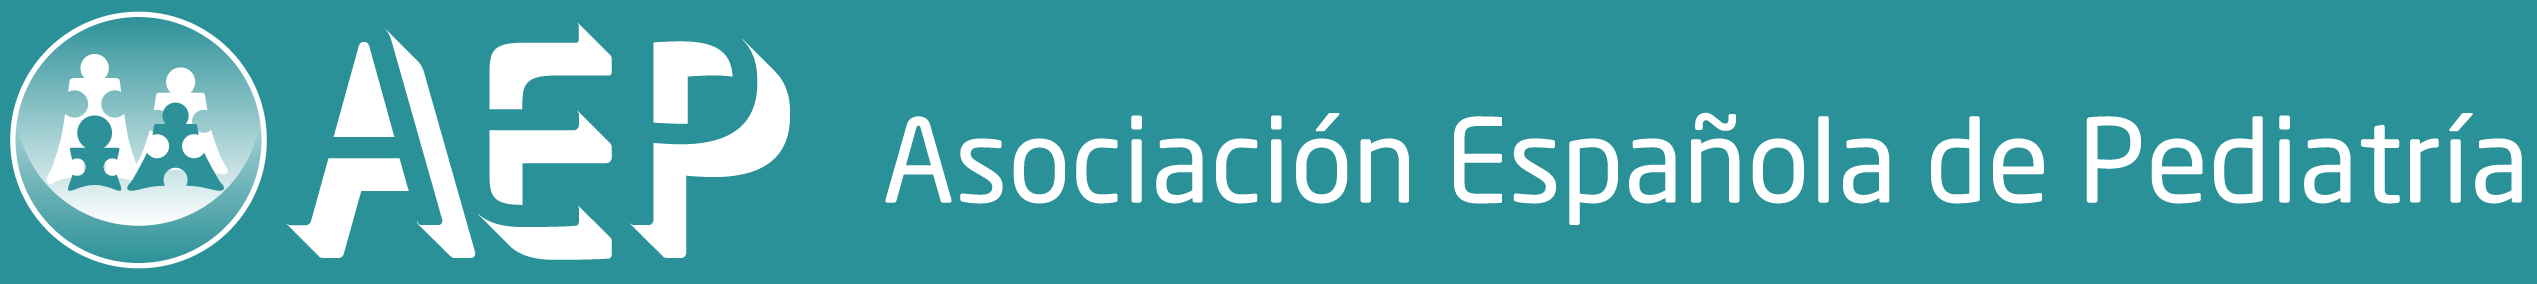 Asociación Española de Pediatría logo